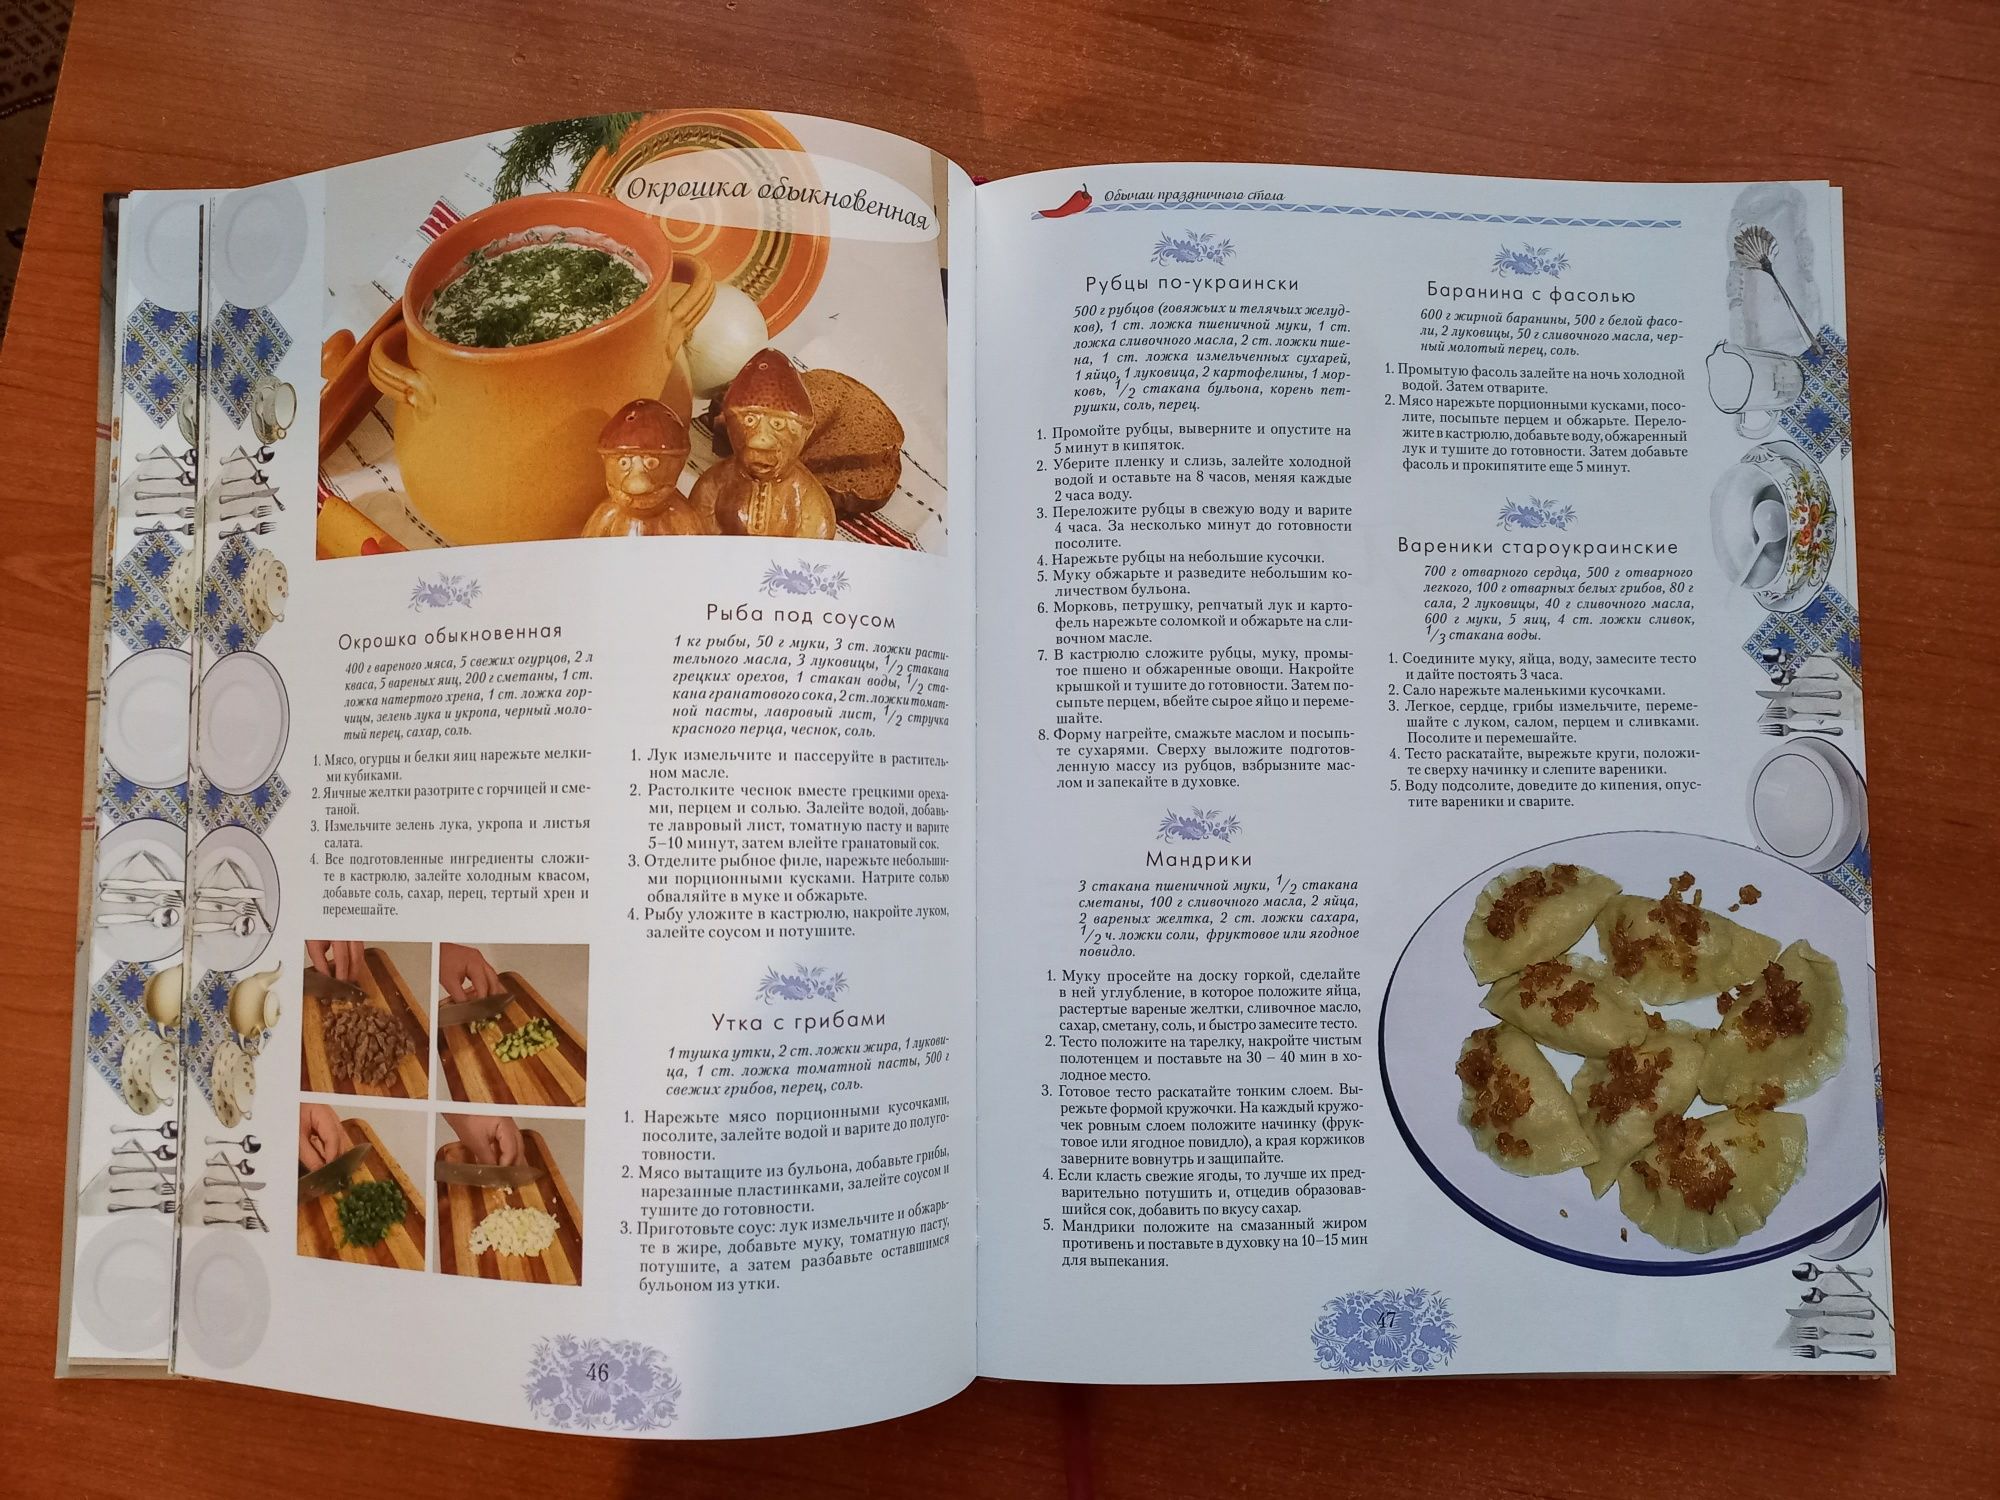 Книга рецептов традиции украинской кухни